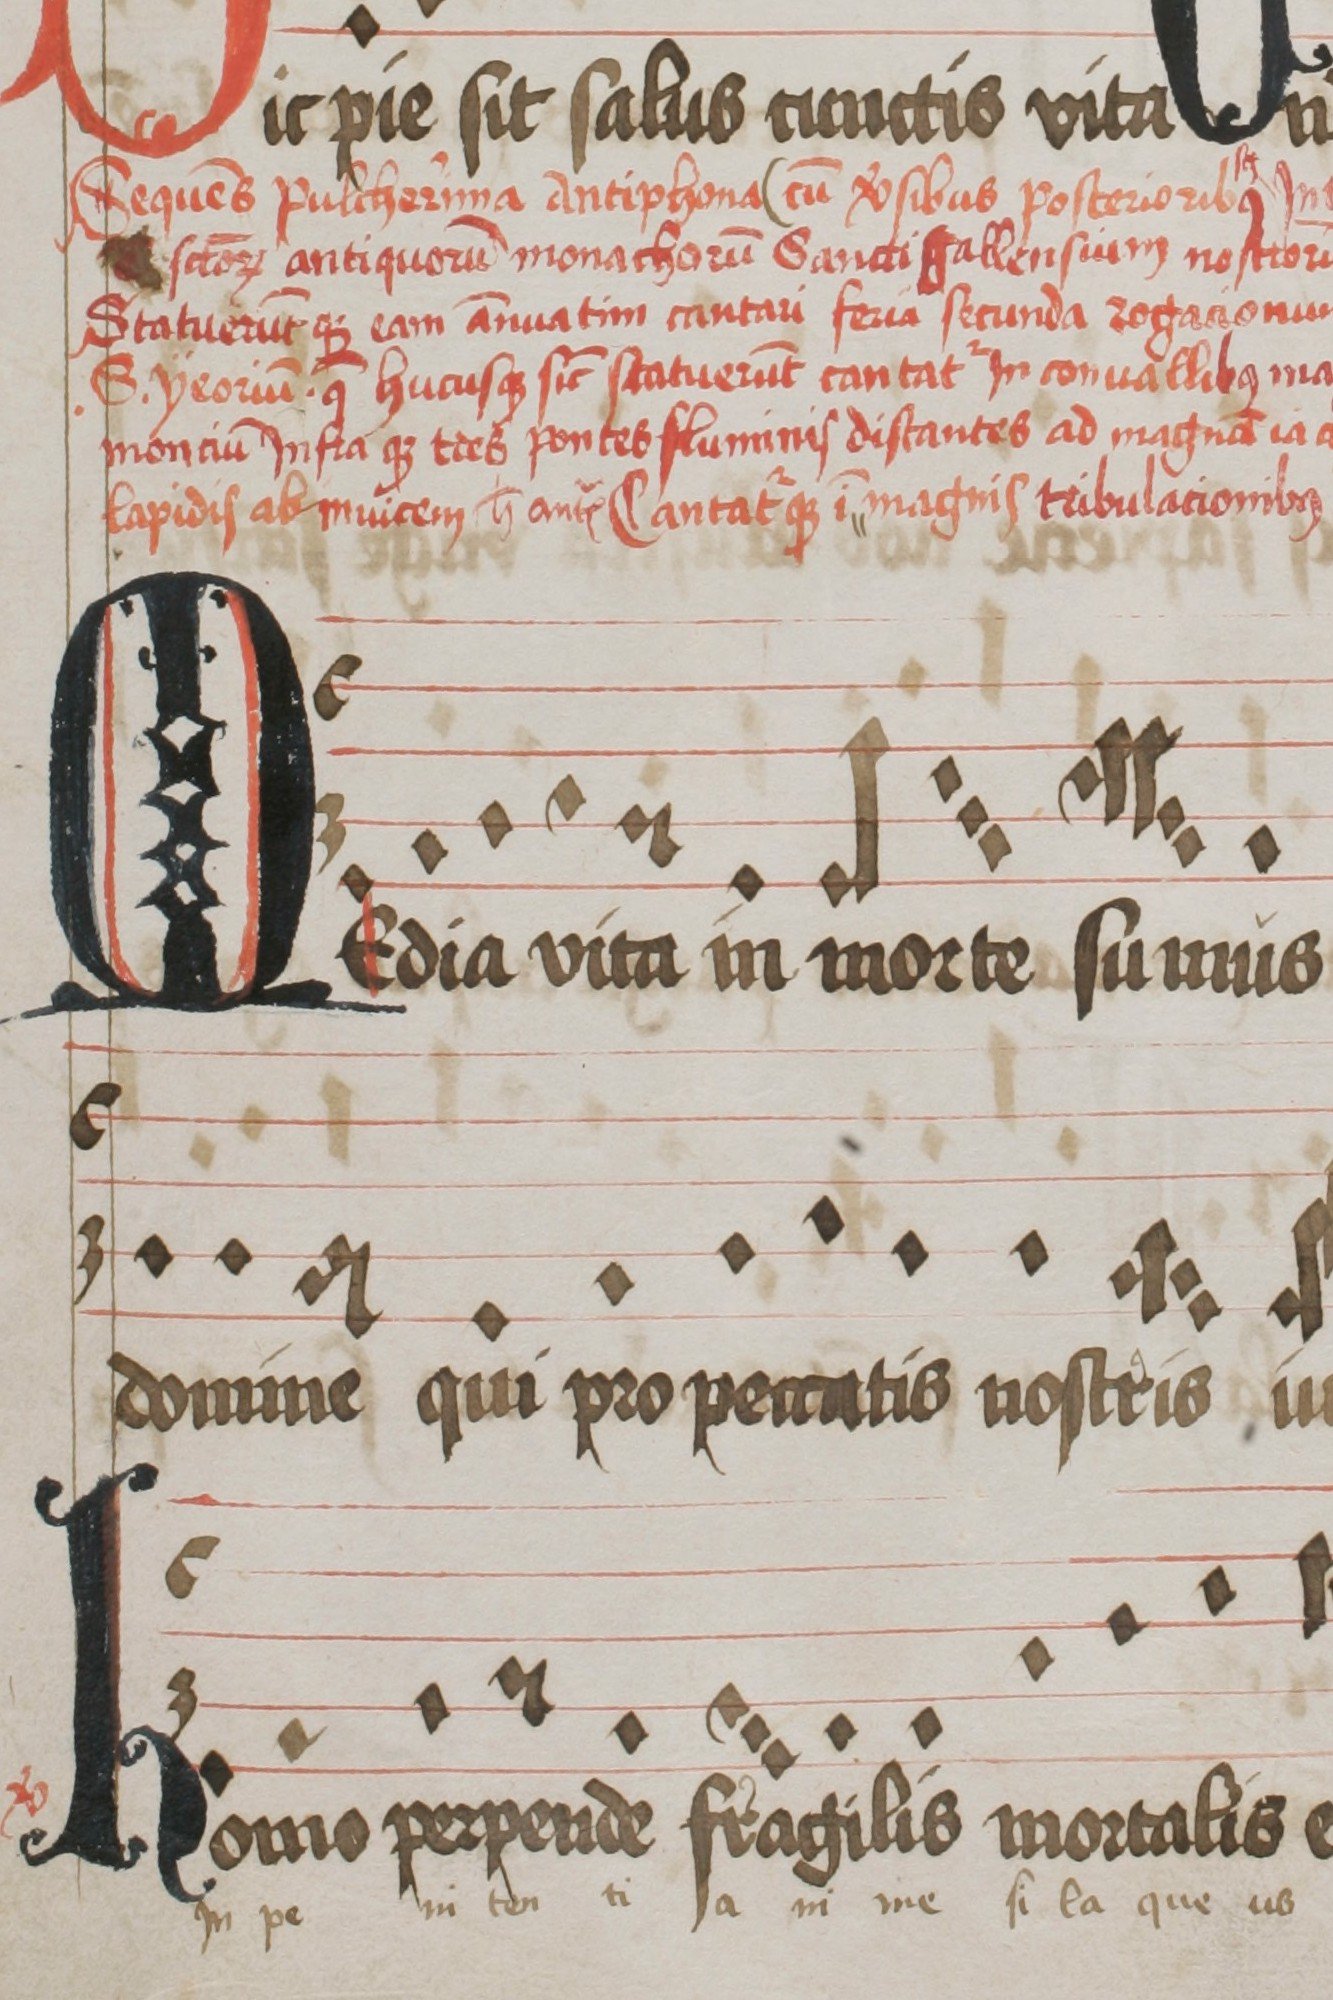 A 1513 manuscript of “Media vita”